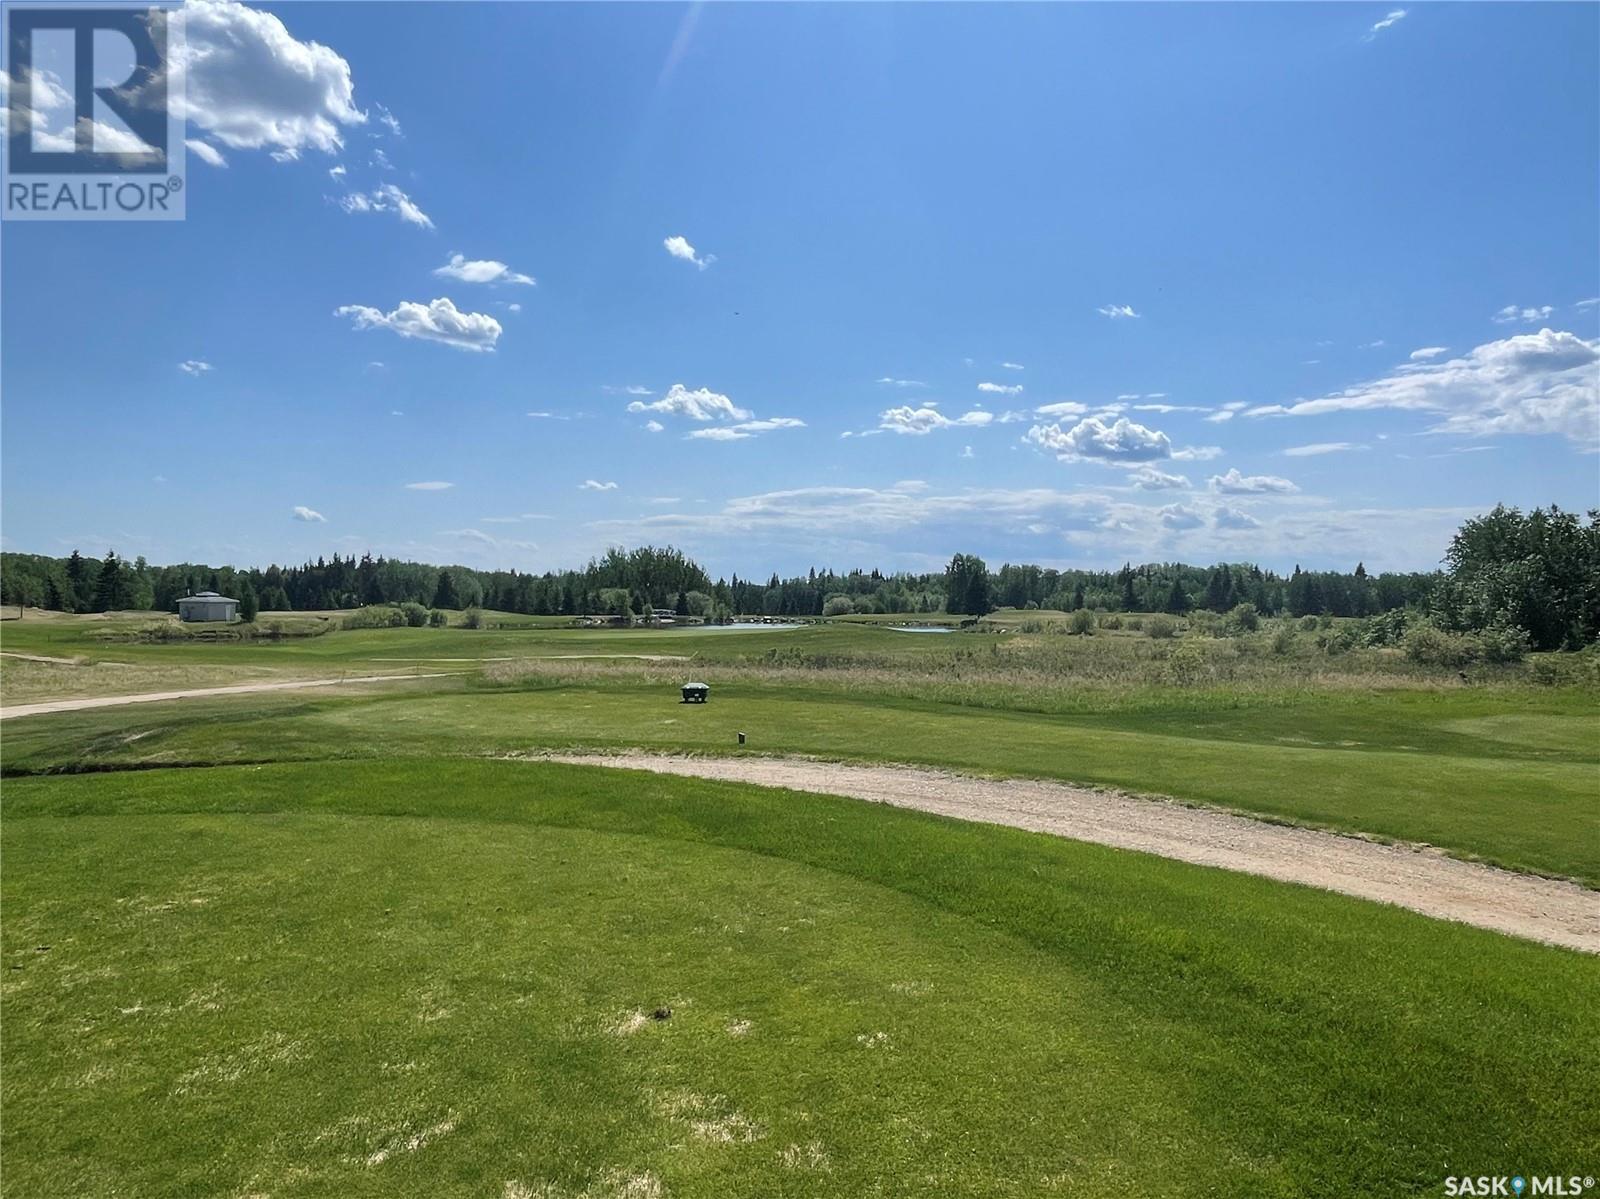 Northern Meadows Golf Club in Goodsoil, Saskatchewan, Canada